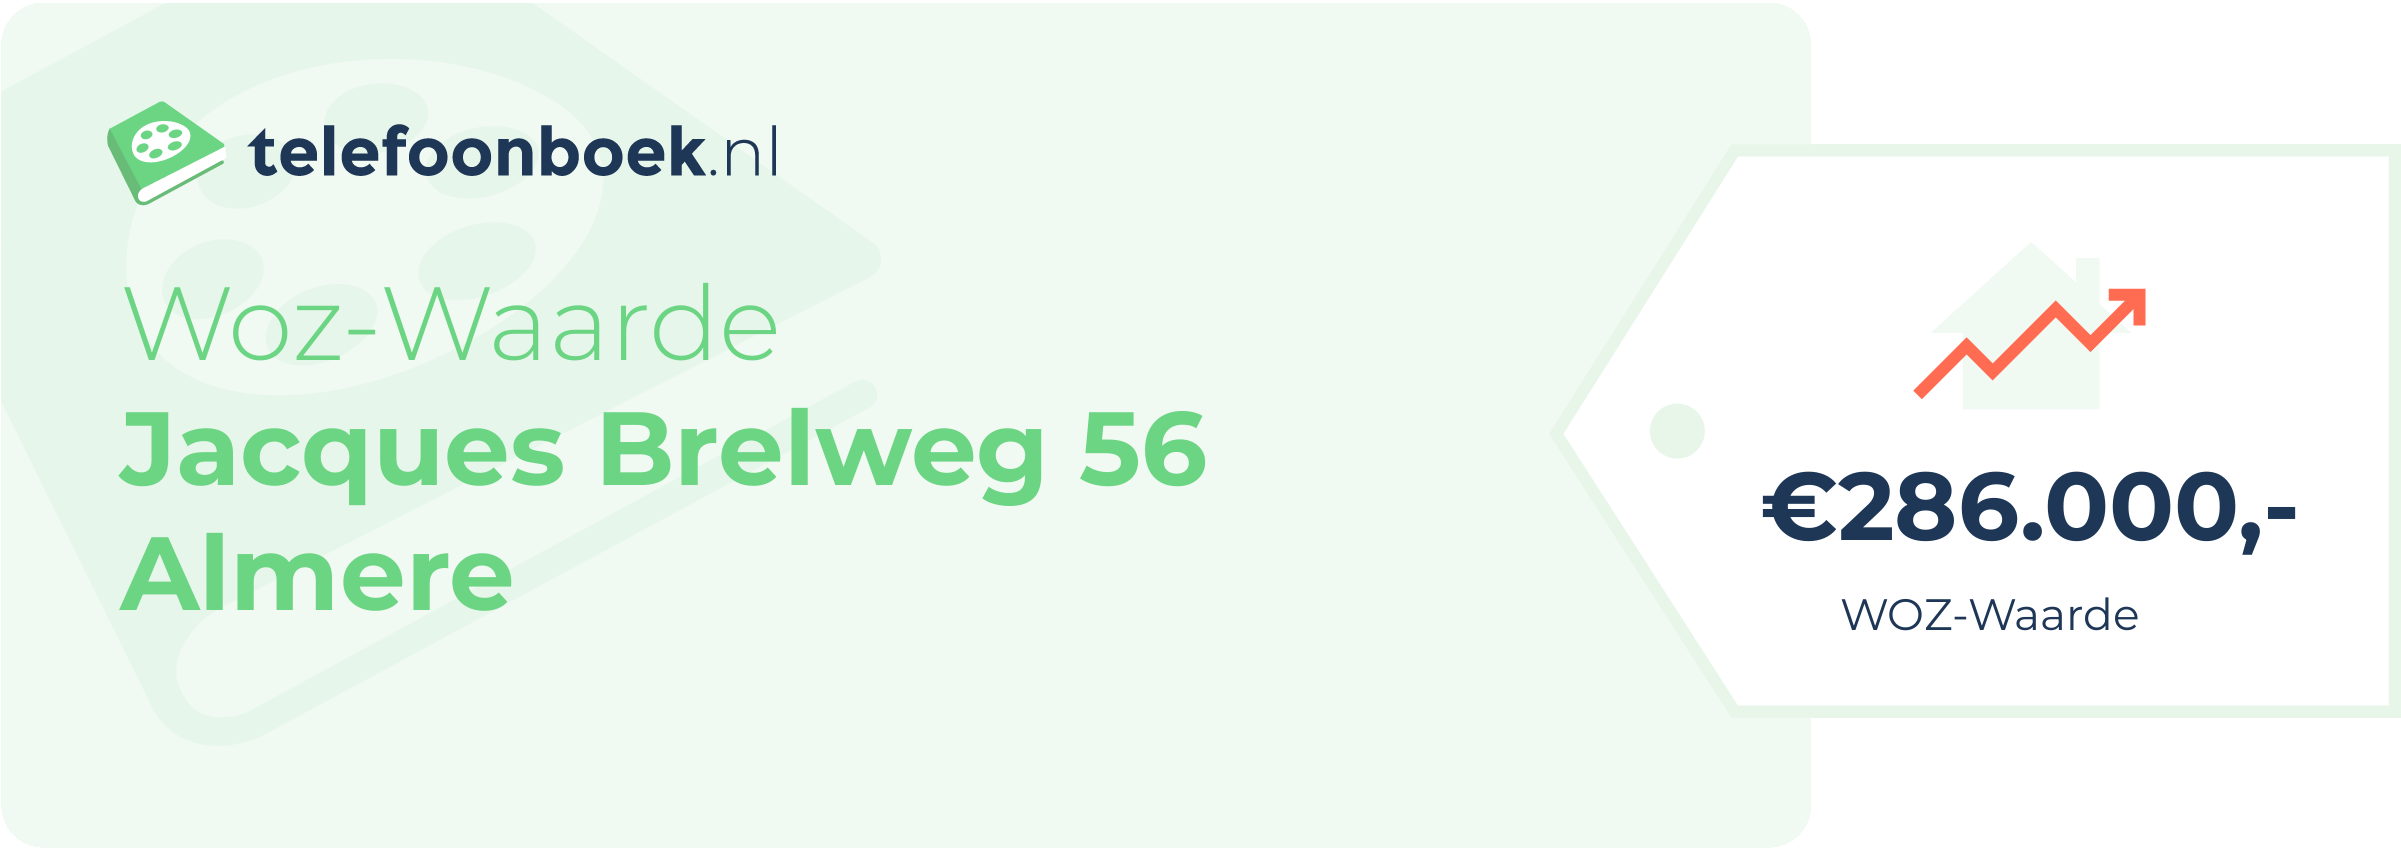 WOZ-waarde Jacques Brelweg 56 Almere